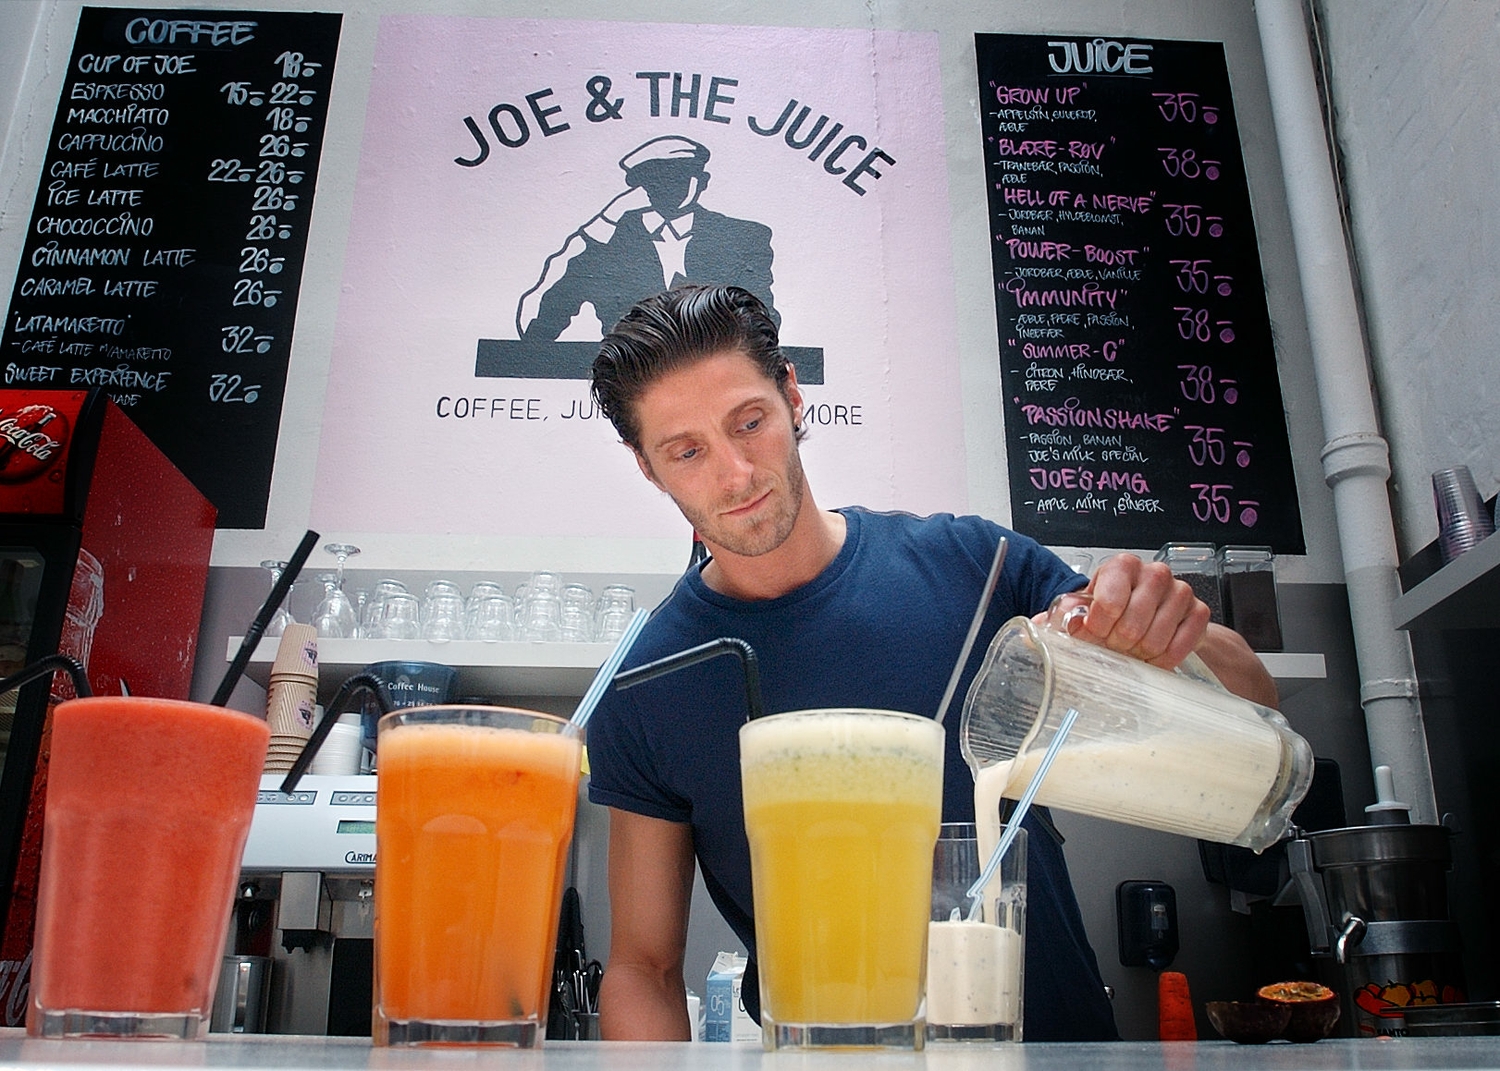 Joe & The Juice, los daneses también saben de conceptos QSR